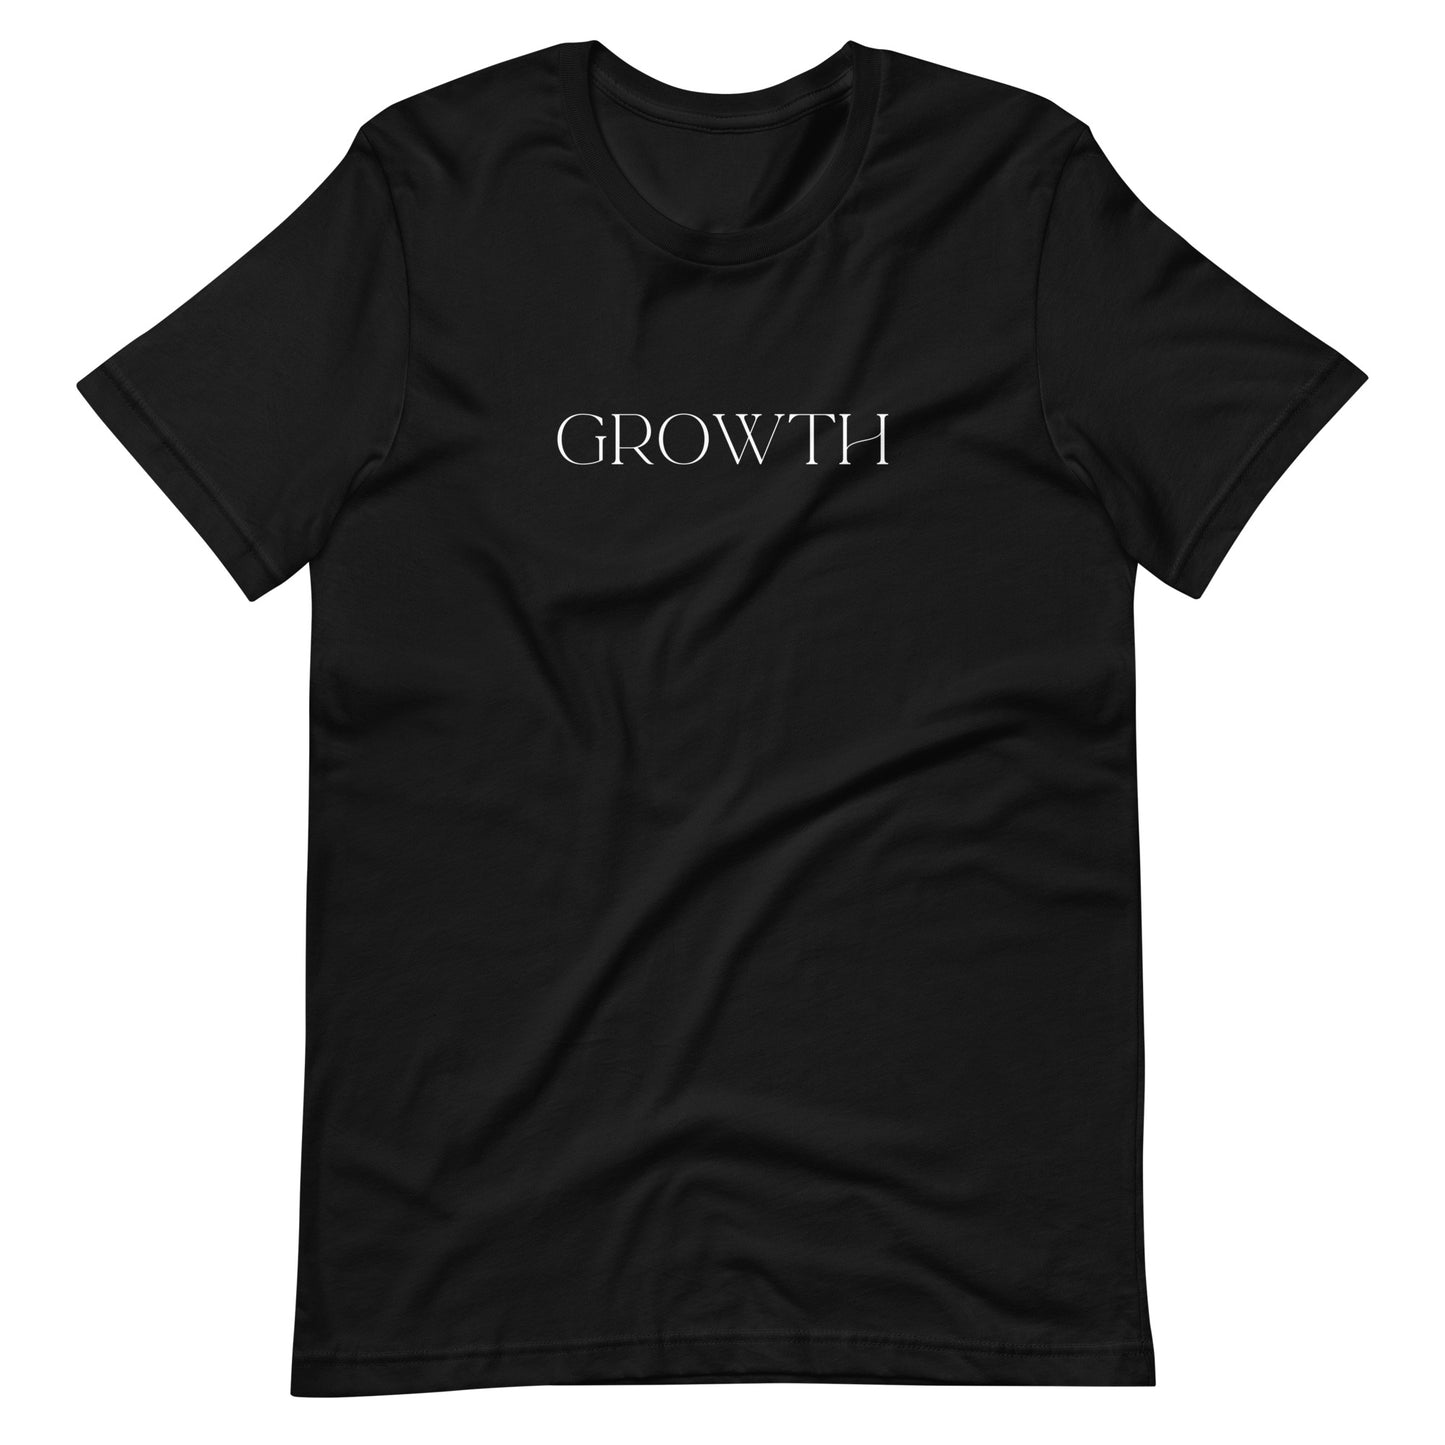 Growth - Designed by Zeeshan Waheed - izeeshanwaheed